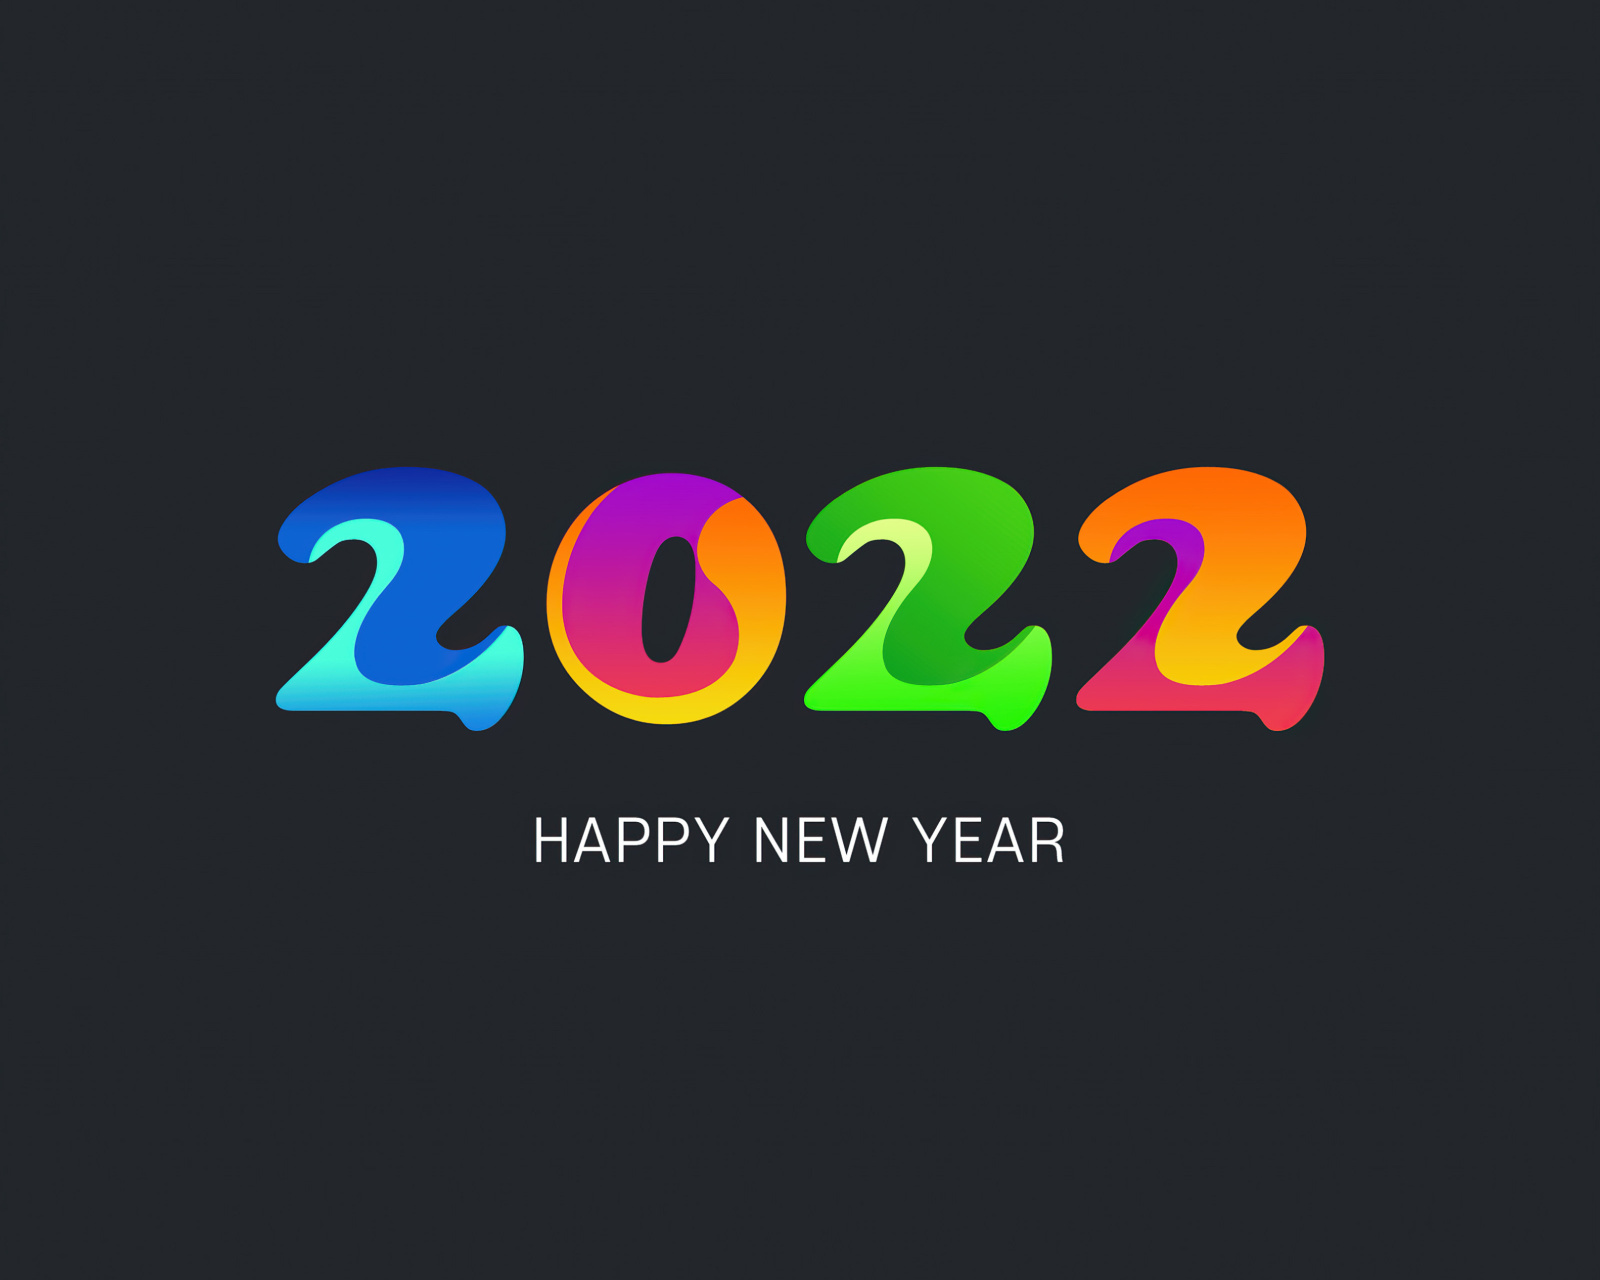 Happy new year 2022 screenshot #1 1600x1280